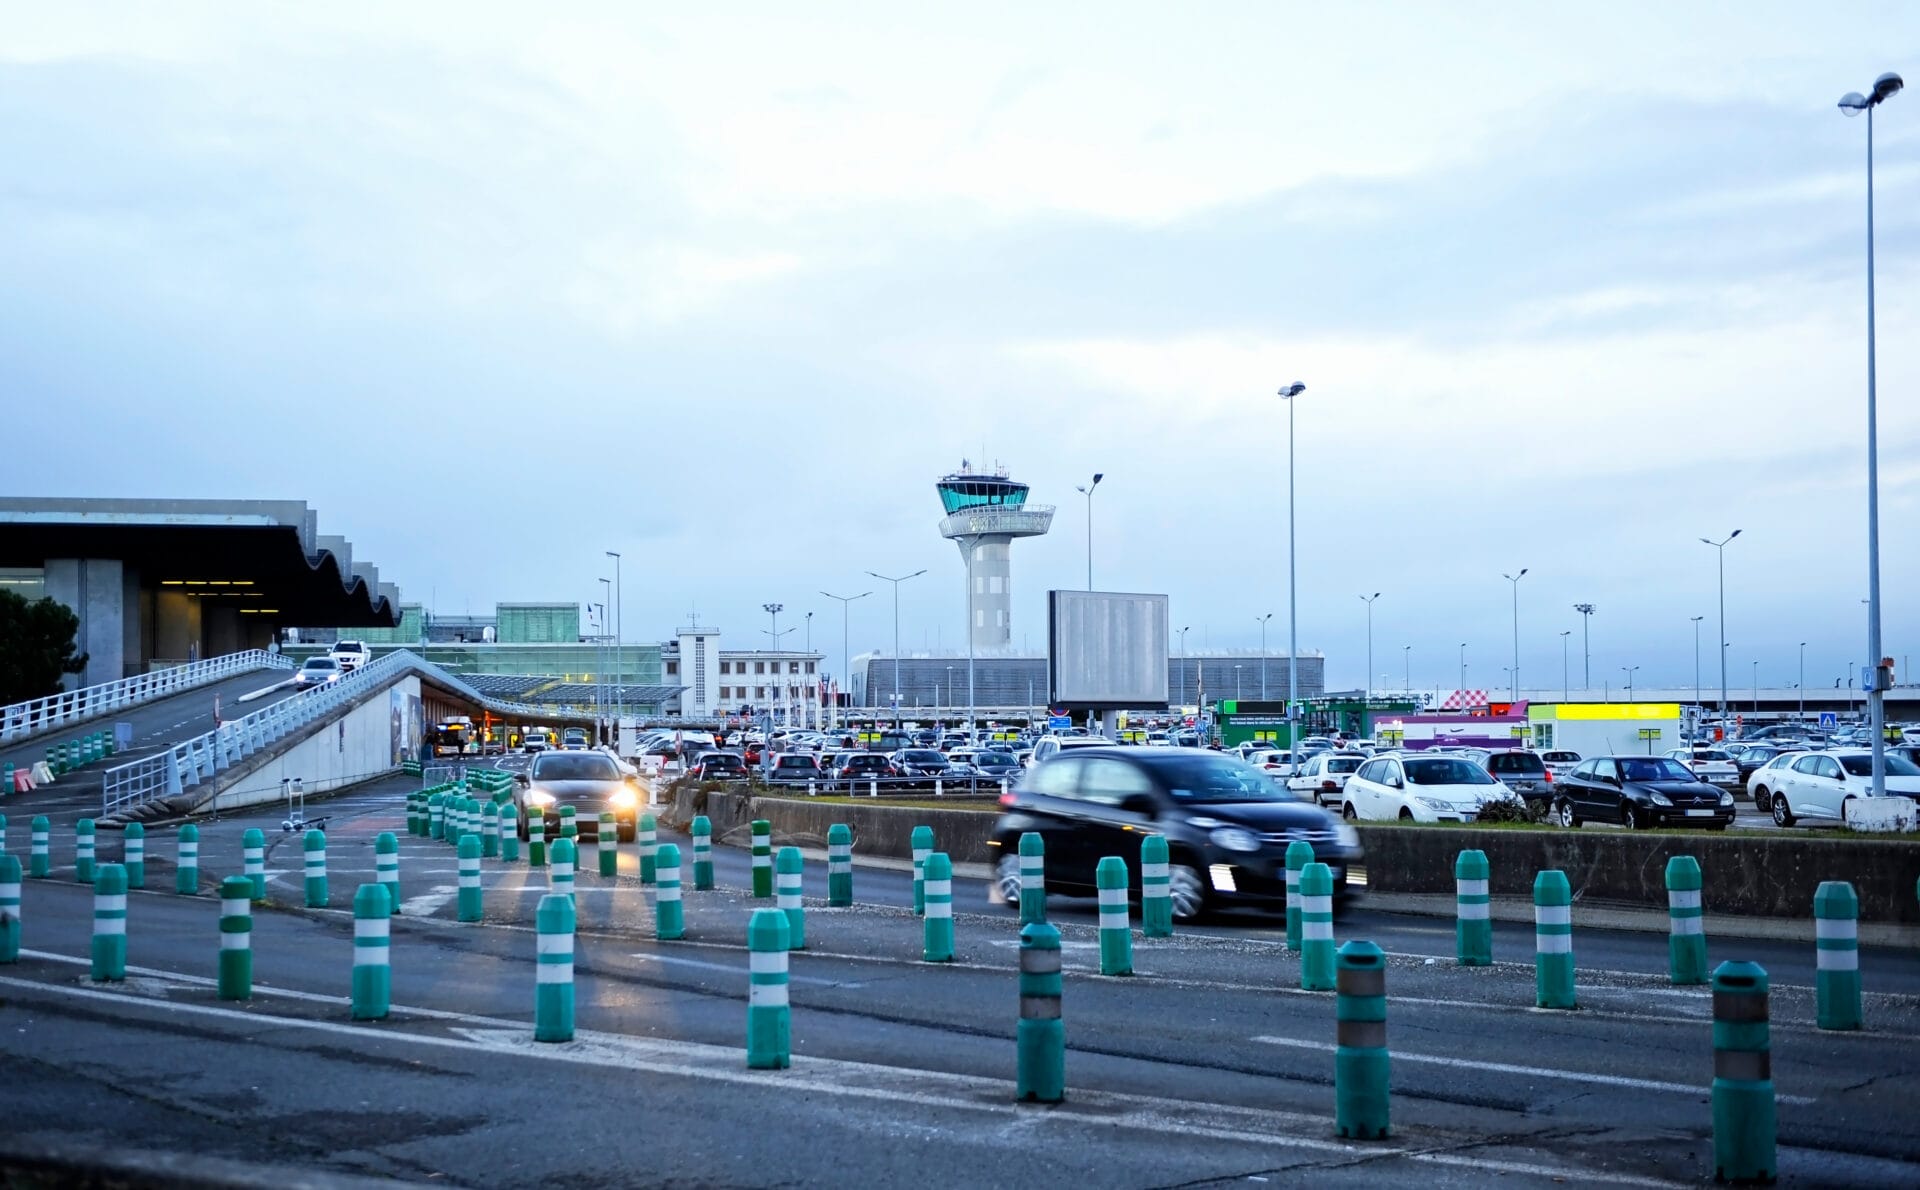 Aeroporto Bordeaux